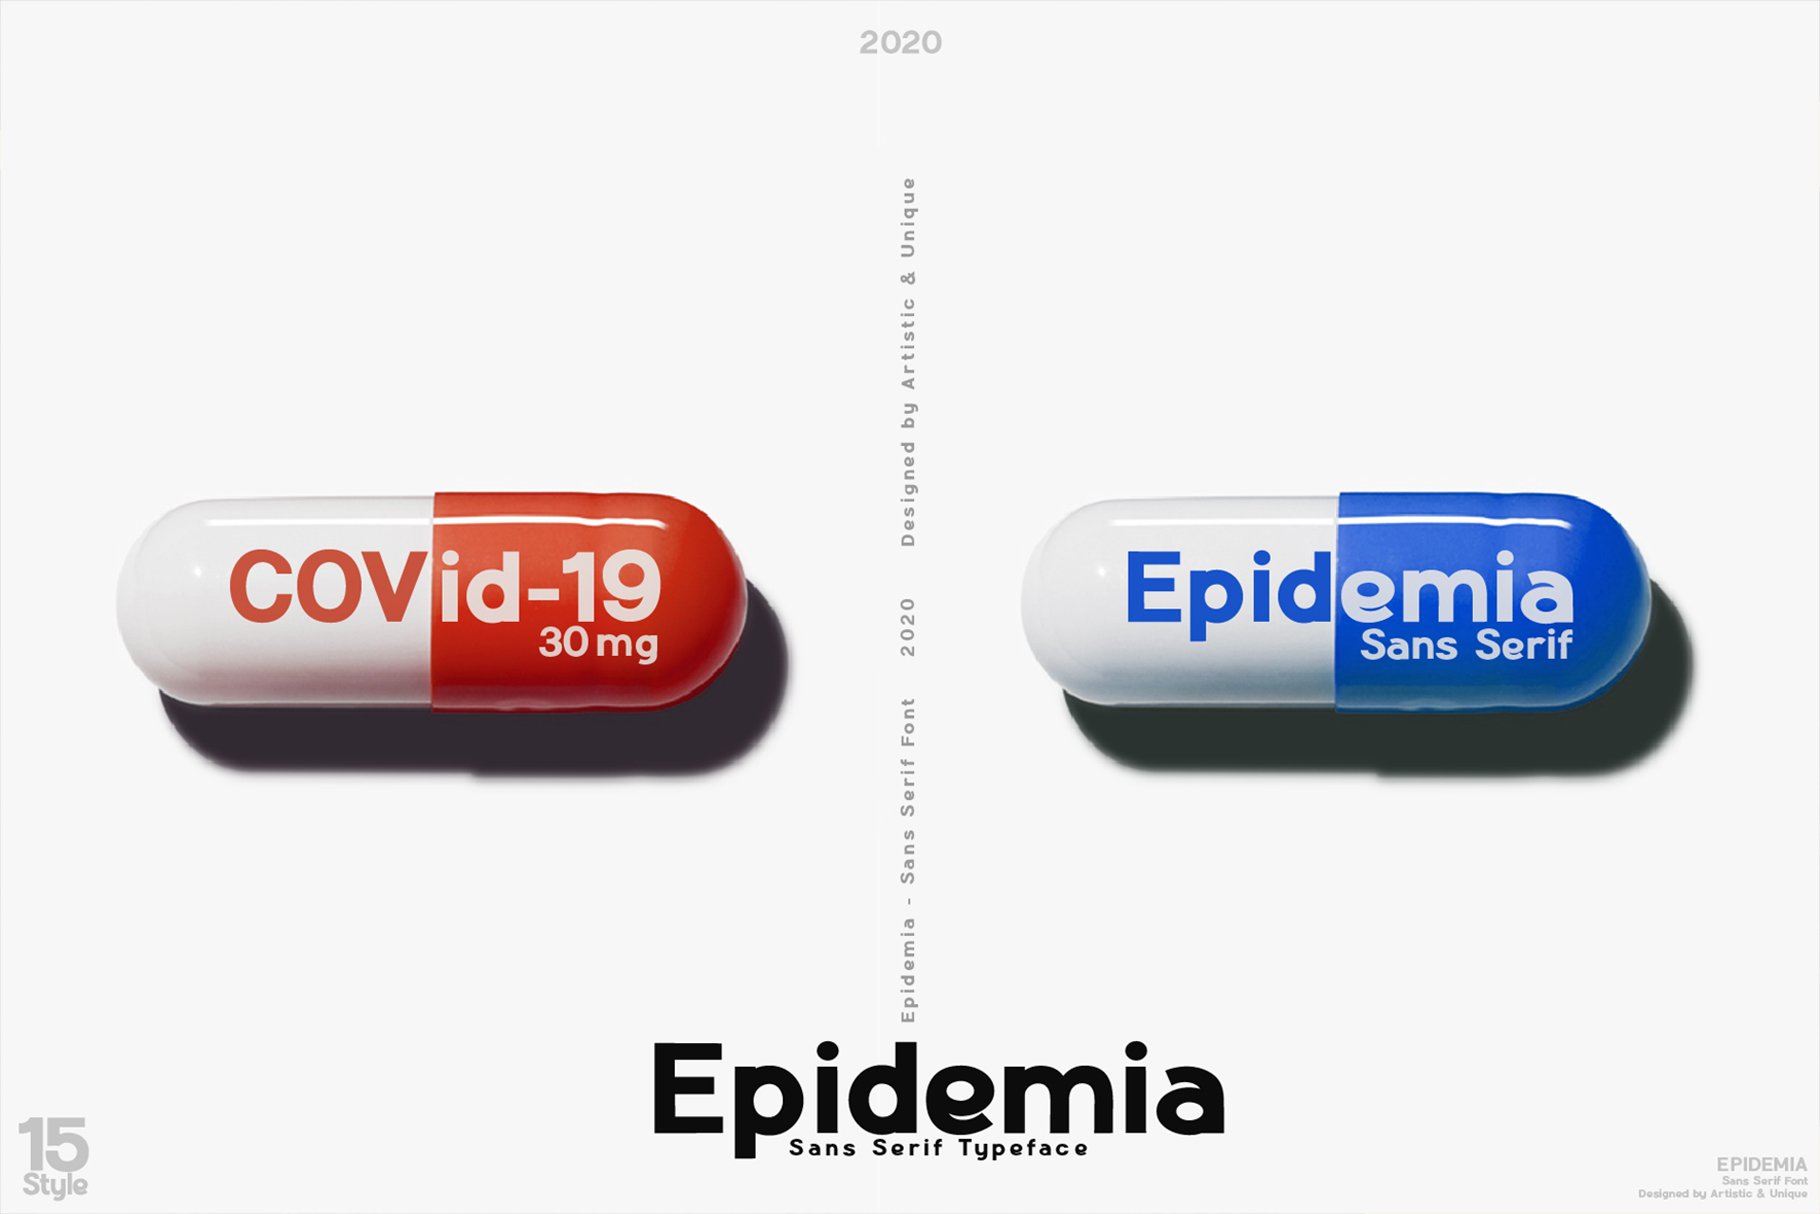 Epidemia - Sans Serif Font Family preview image.